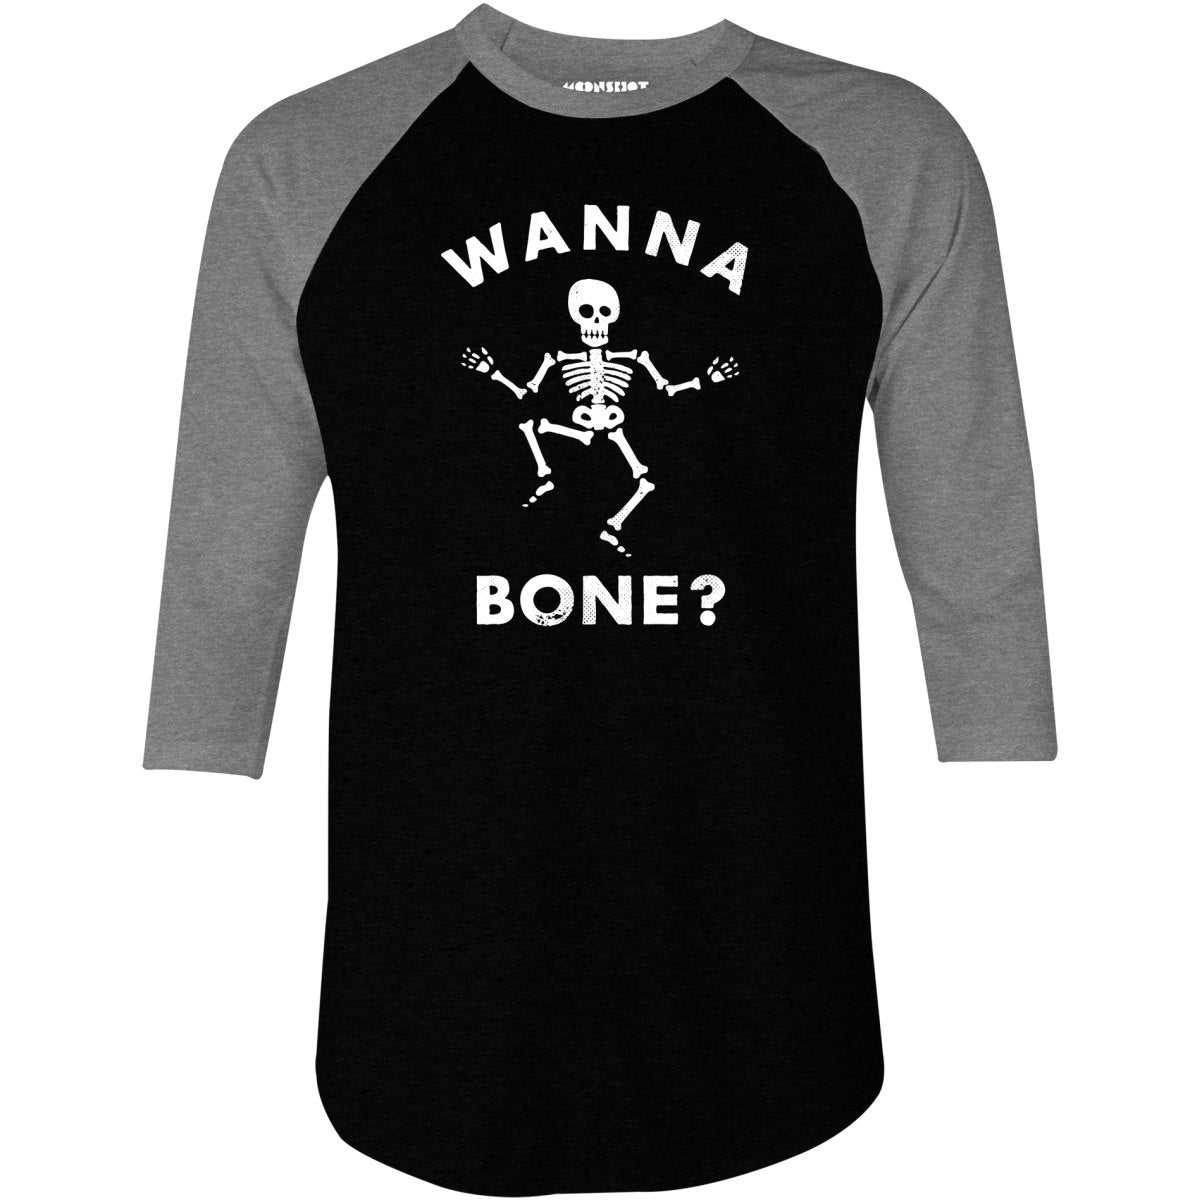 Wanna Bone? - 3/4 Sleeve Raglan T-Shirt